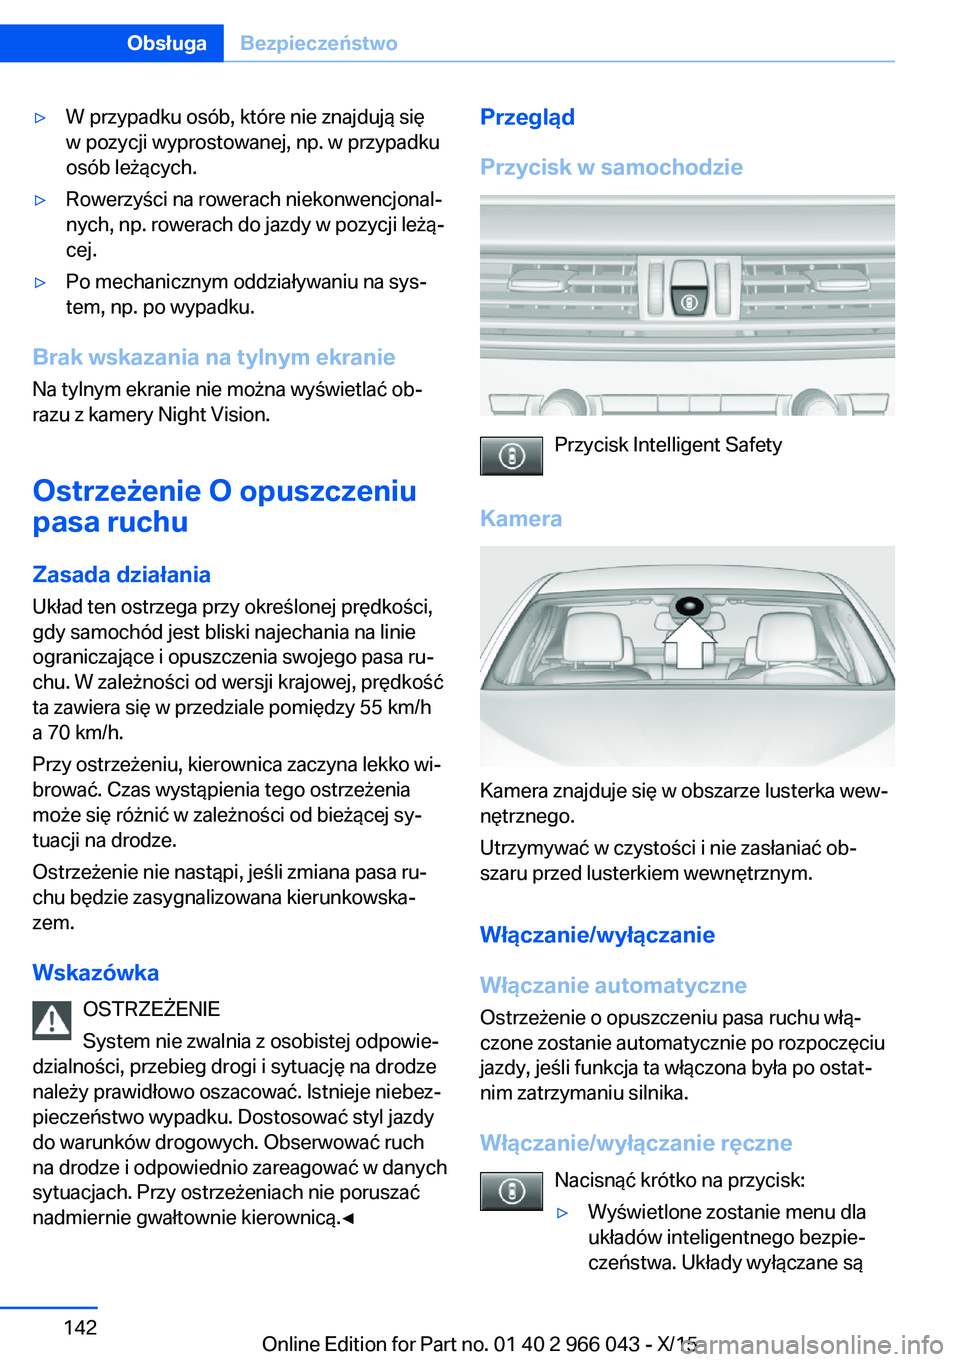 BMW X6 2016  Instrukcja obsługi (in Polish) ▷W przypadku osób, które nie znajdują się
w pozycji wyprostowanej, np. w przypadku
osób leżących.▷Rowerzyści na rowerach niekonwencjonal‐
nych, np. rowerach do jazdy w pozycji leżą‐
